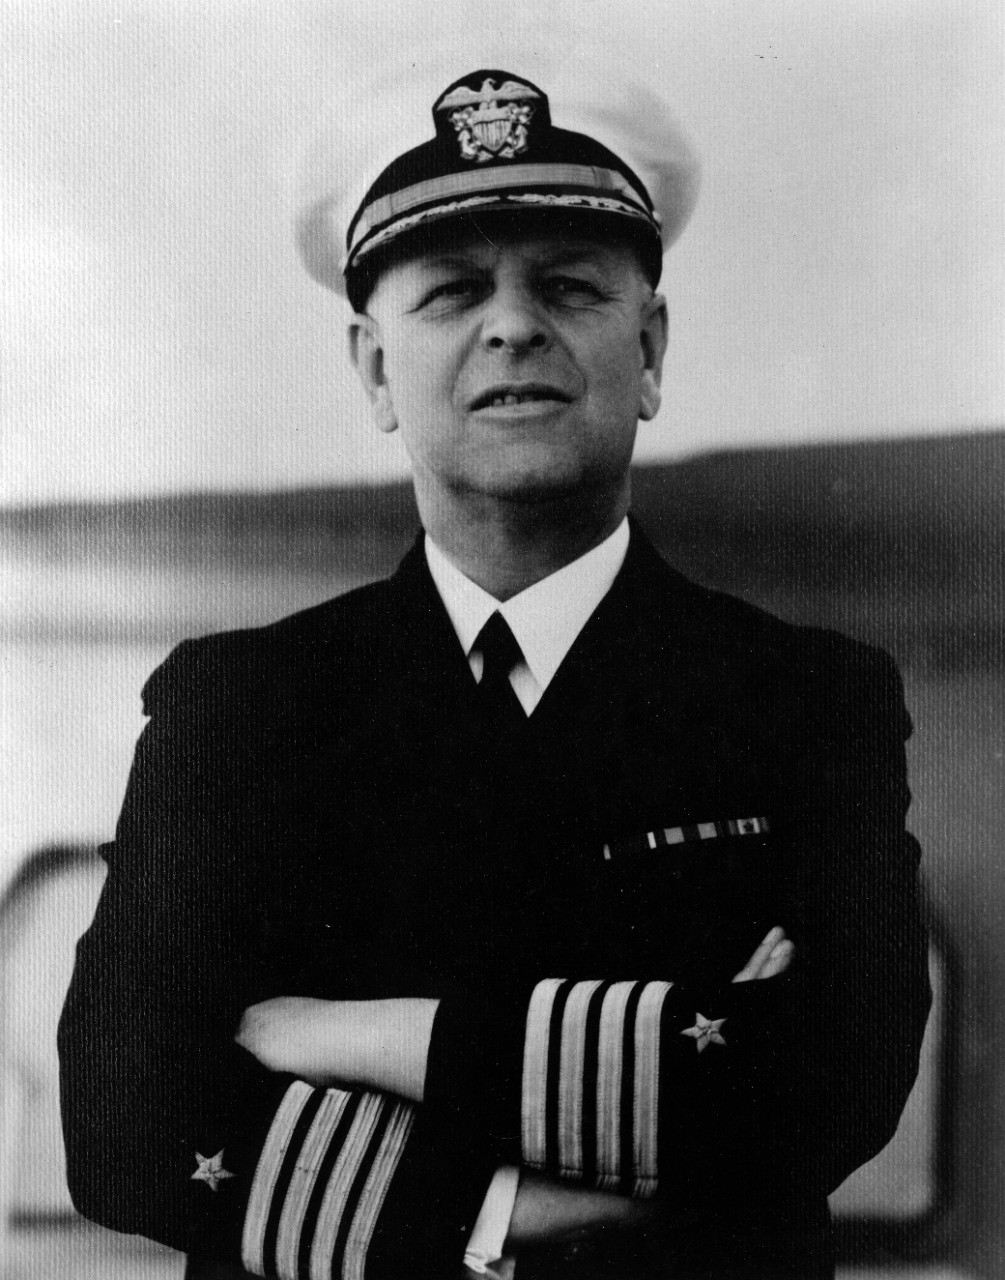 Captain Husband E. Kimmel, USN